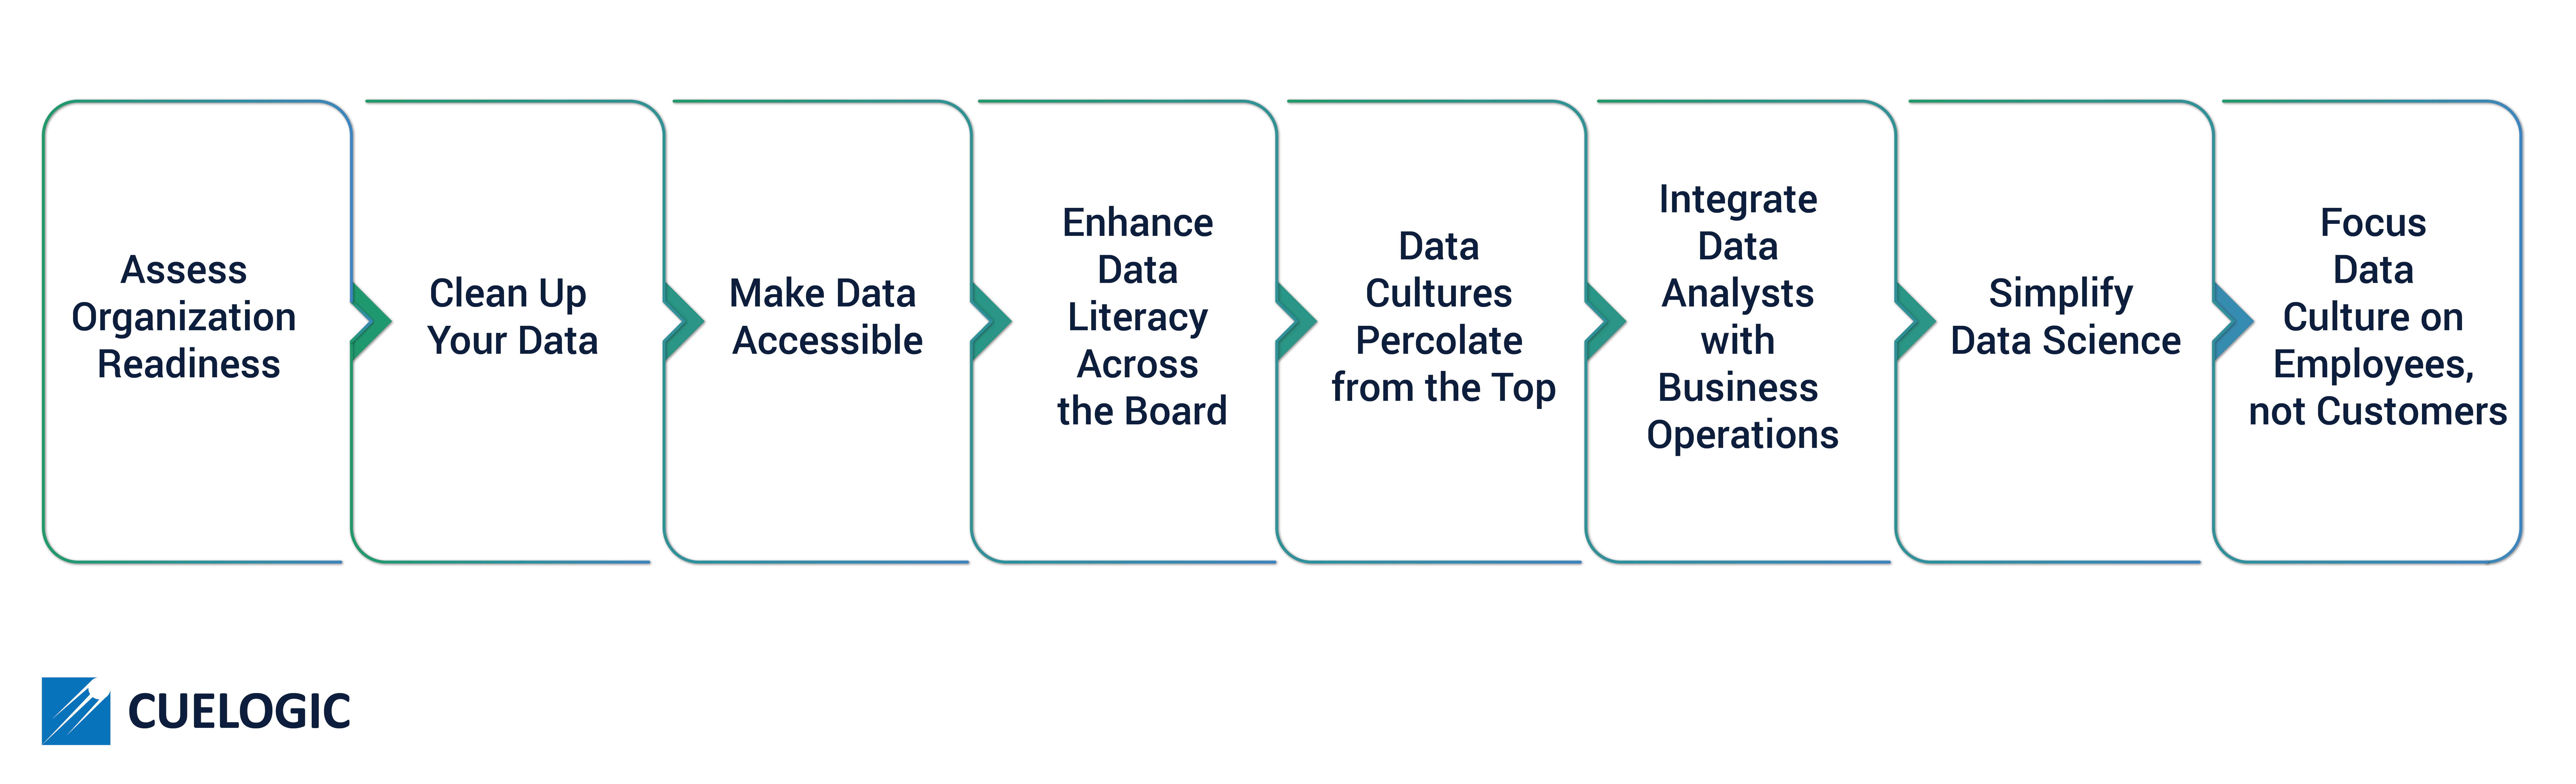 Data culture